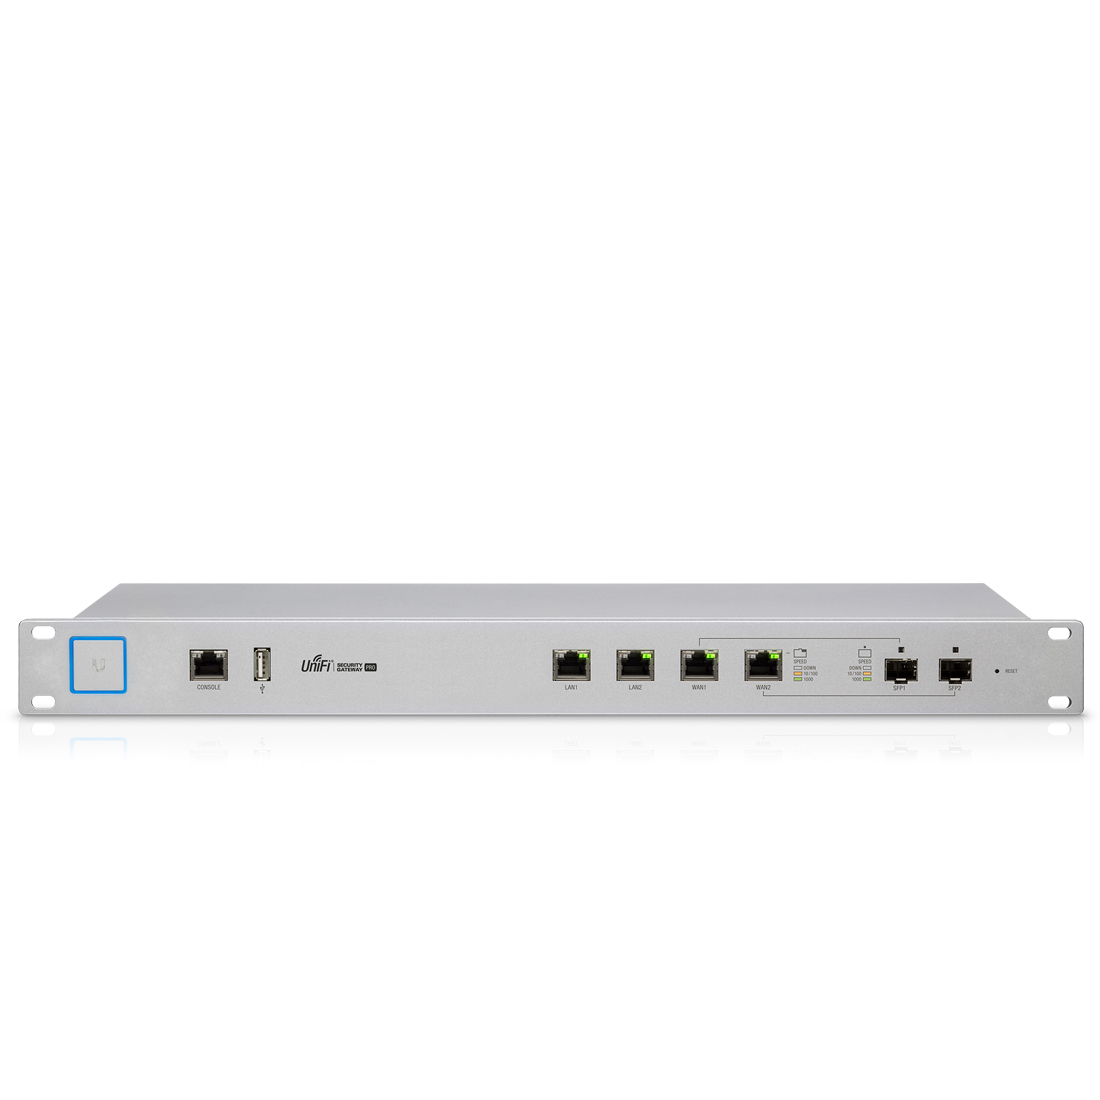 Ubiquiti USG-PRO-4 / Enterprise Gateway Router